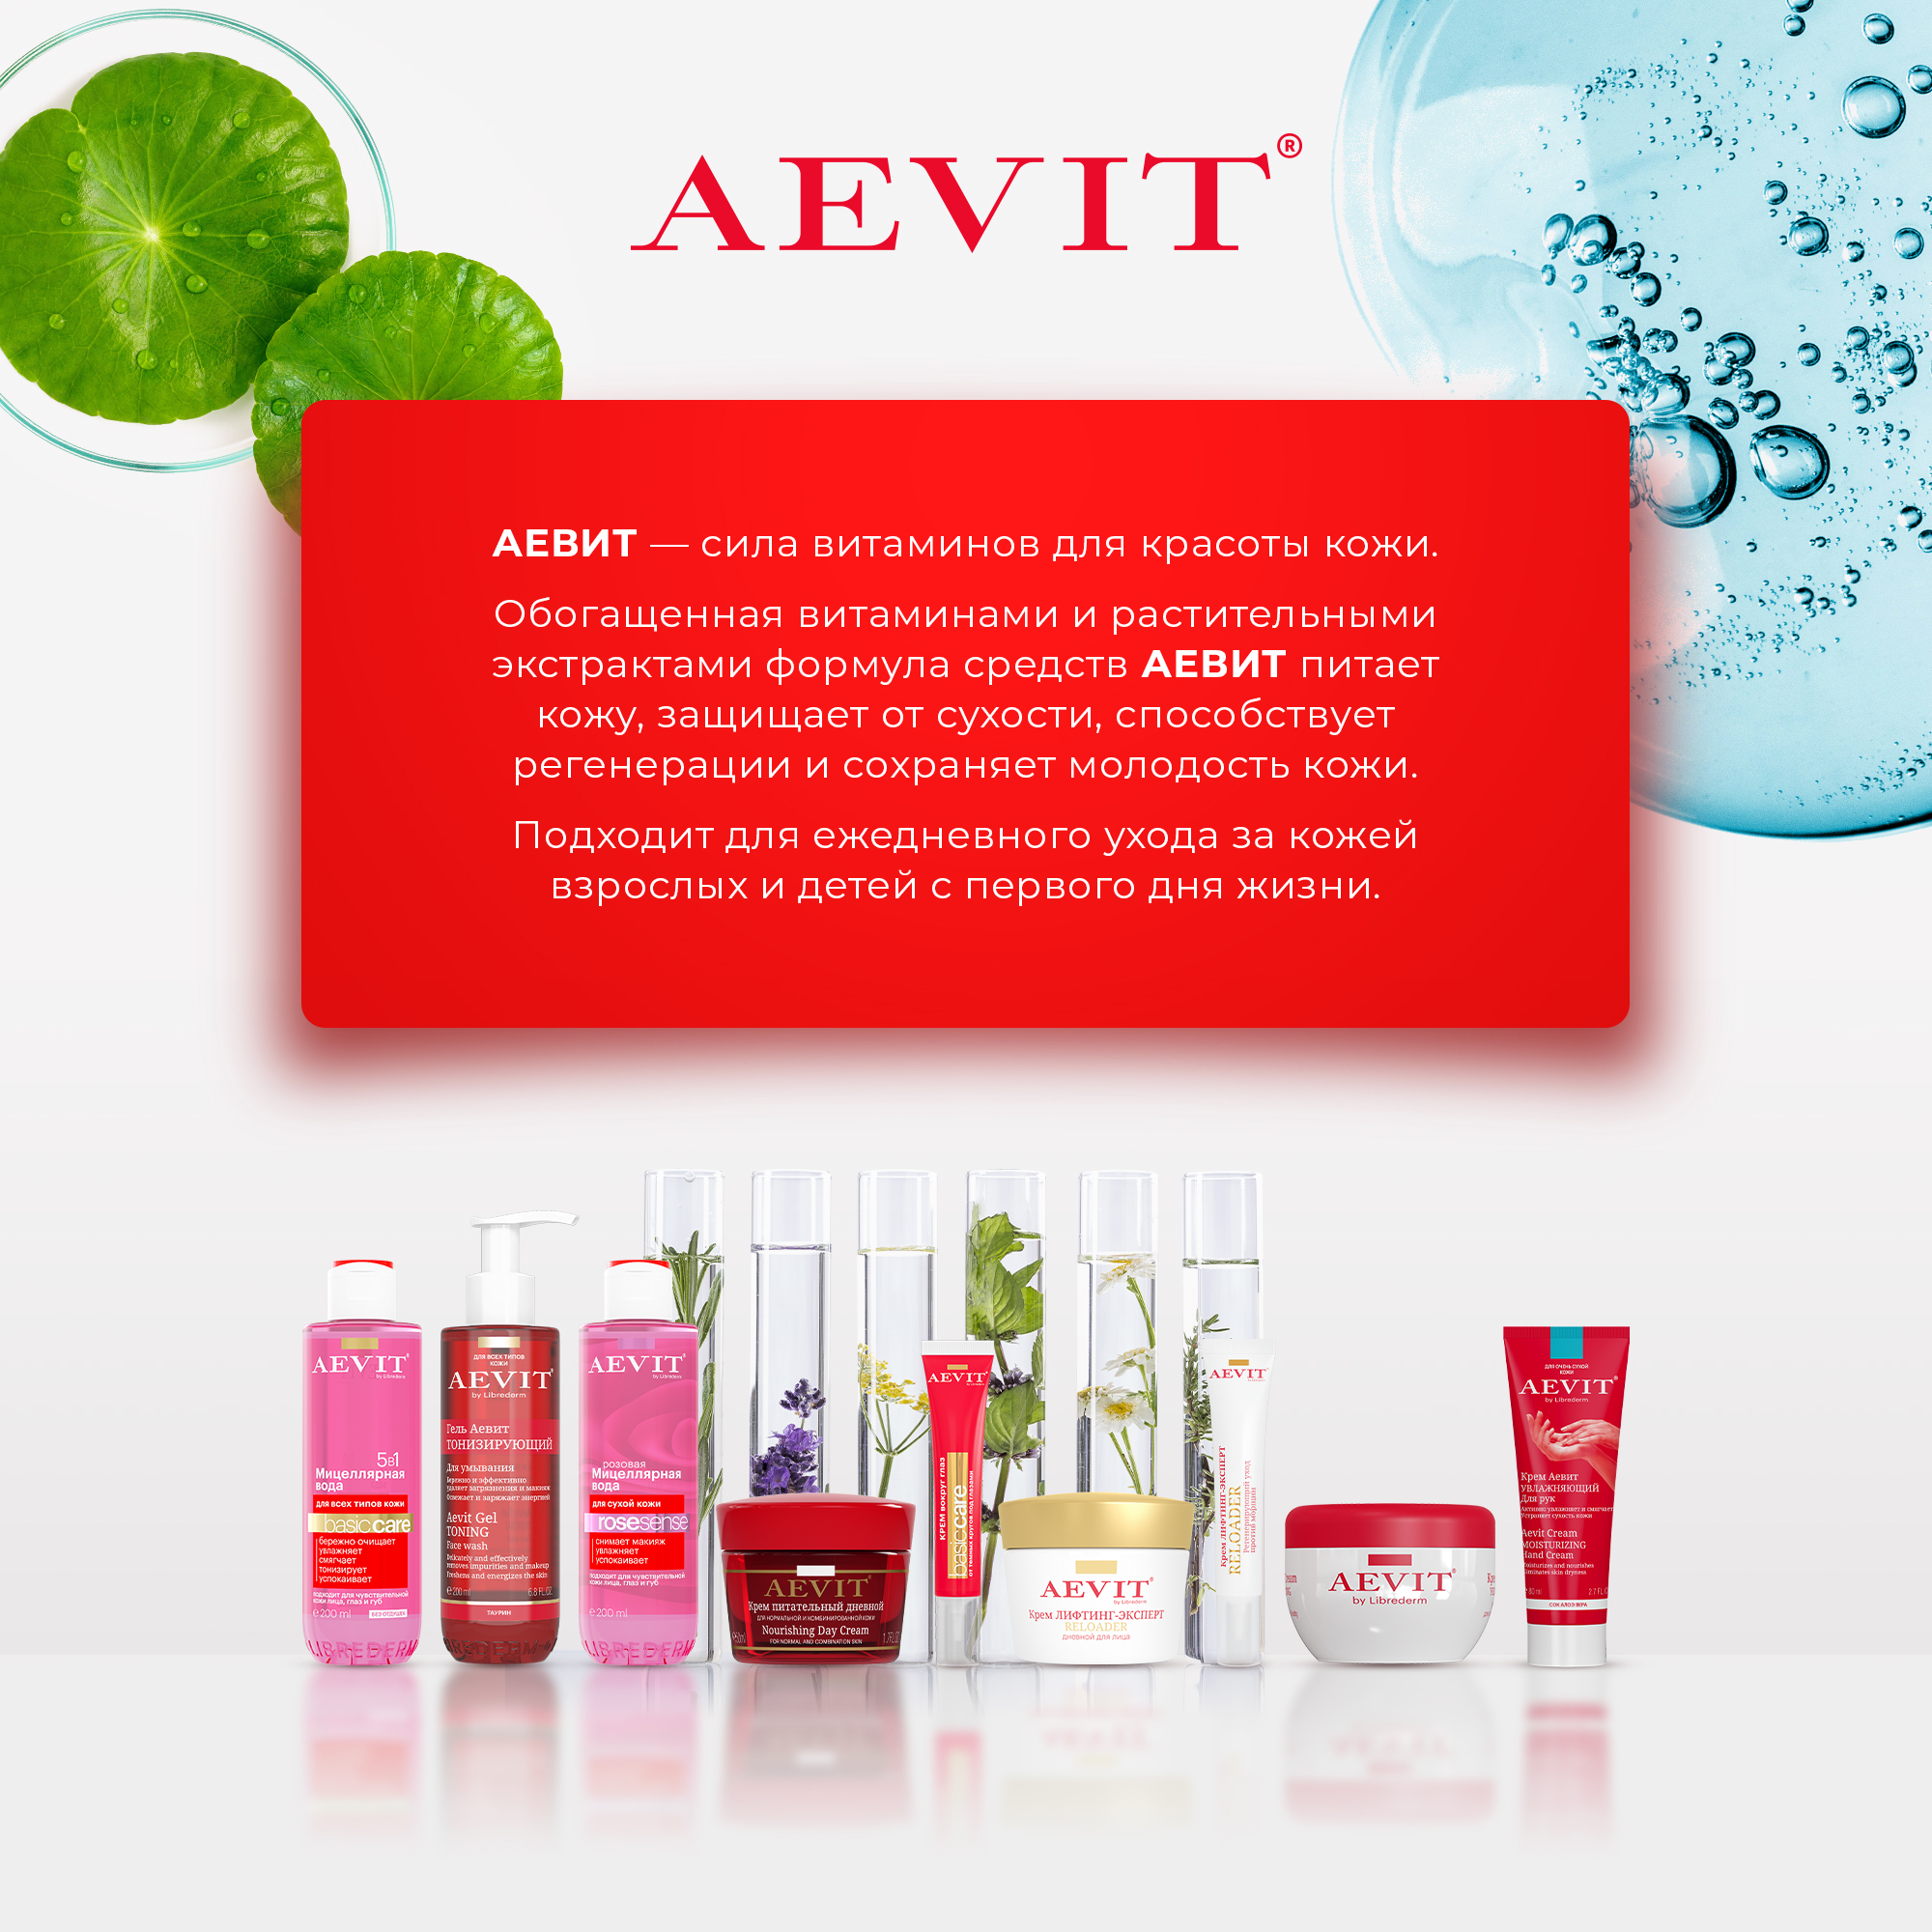 Гигиеническая помада AEVIT Питание и восстановление 4 г - фото 7